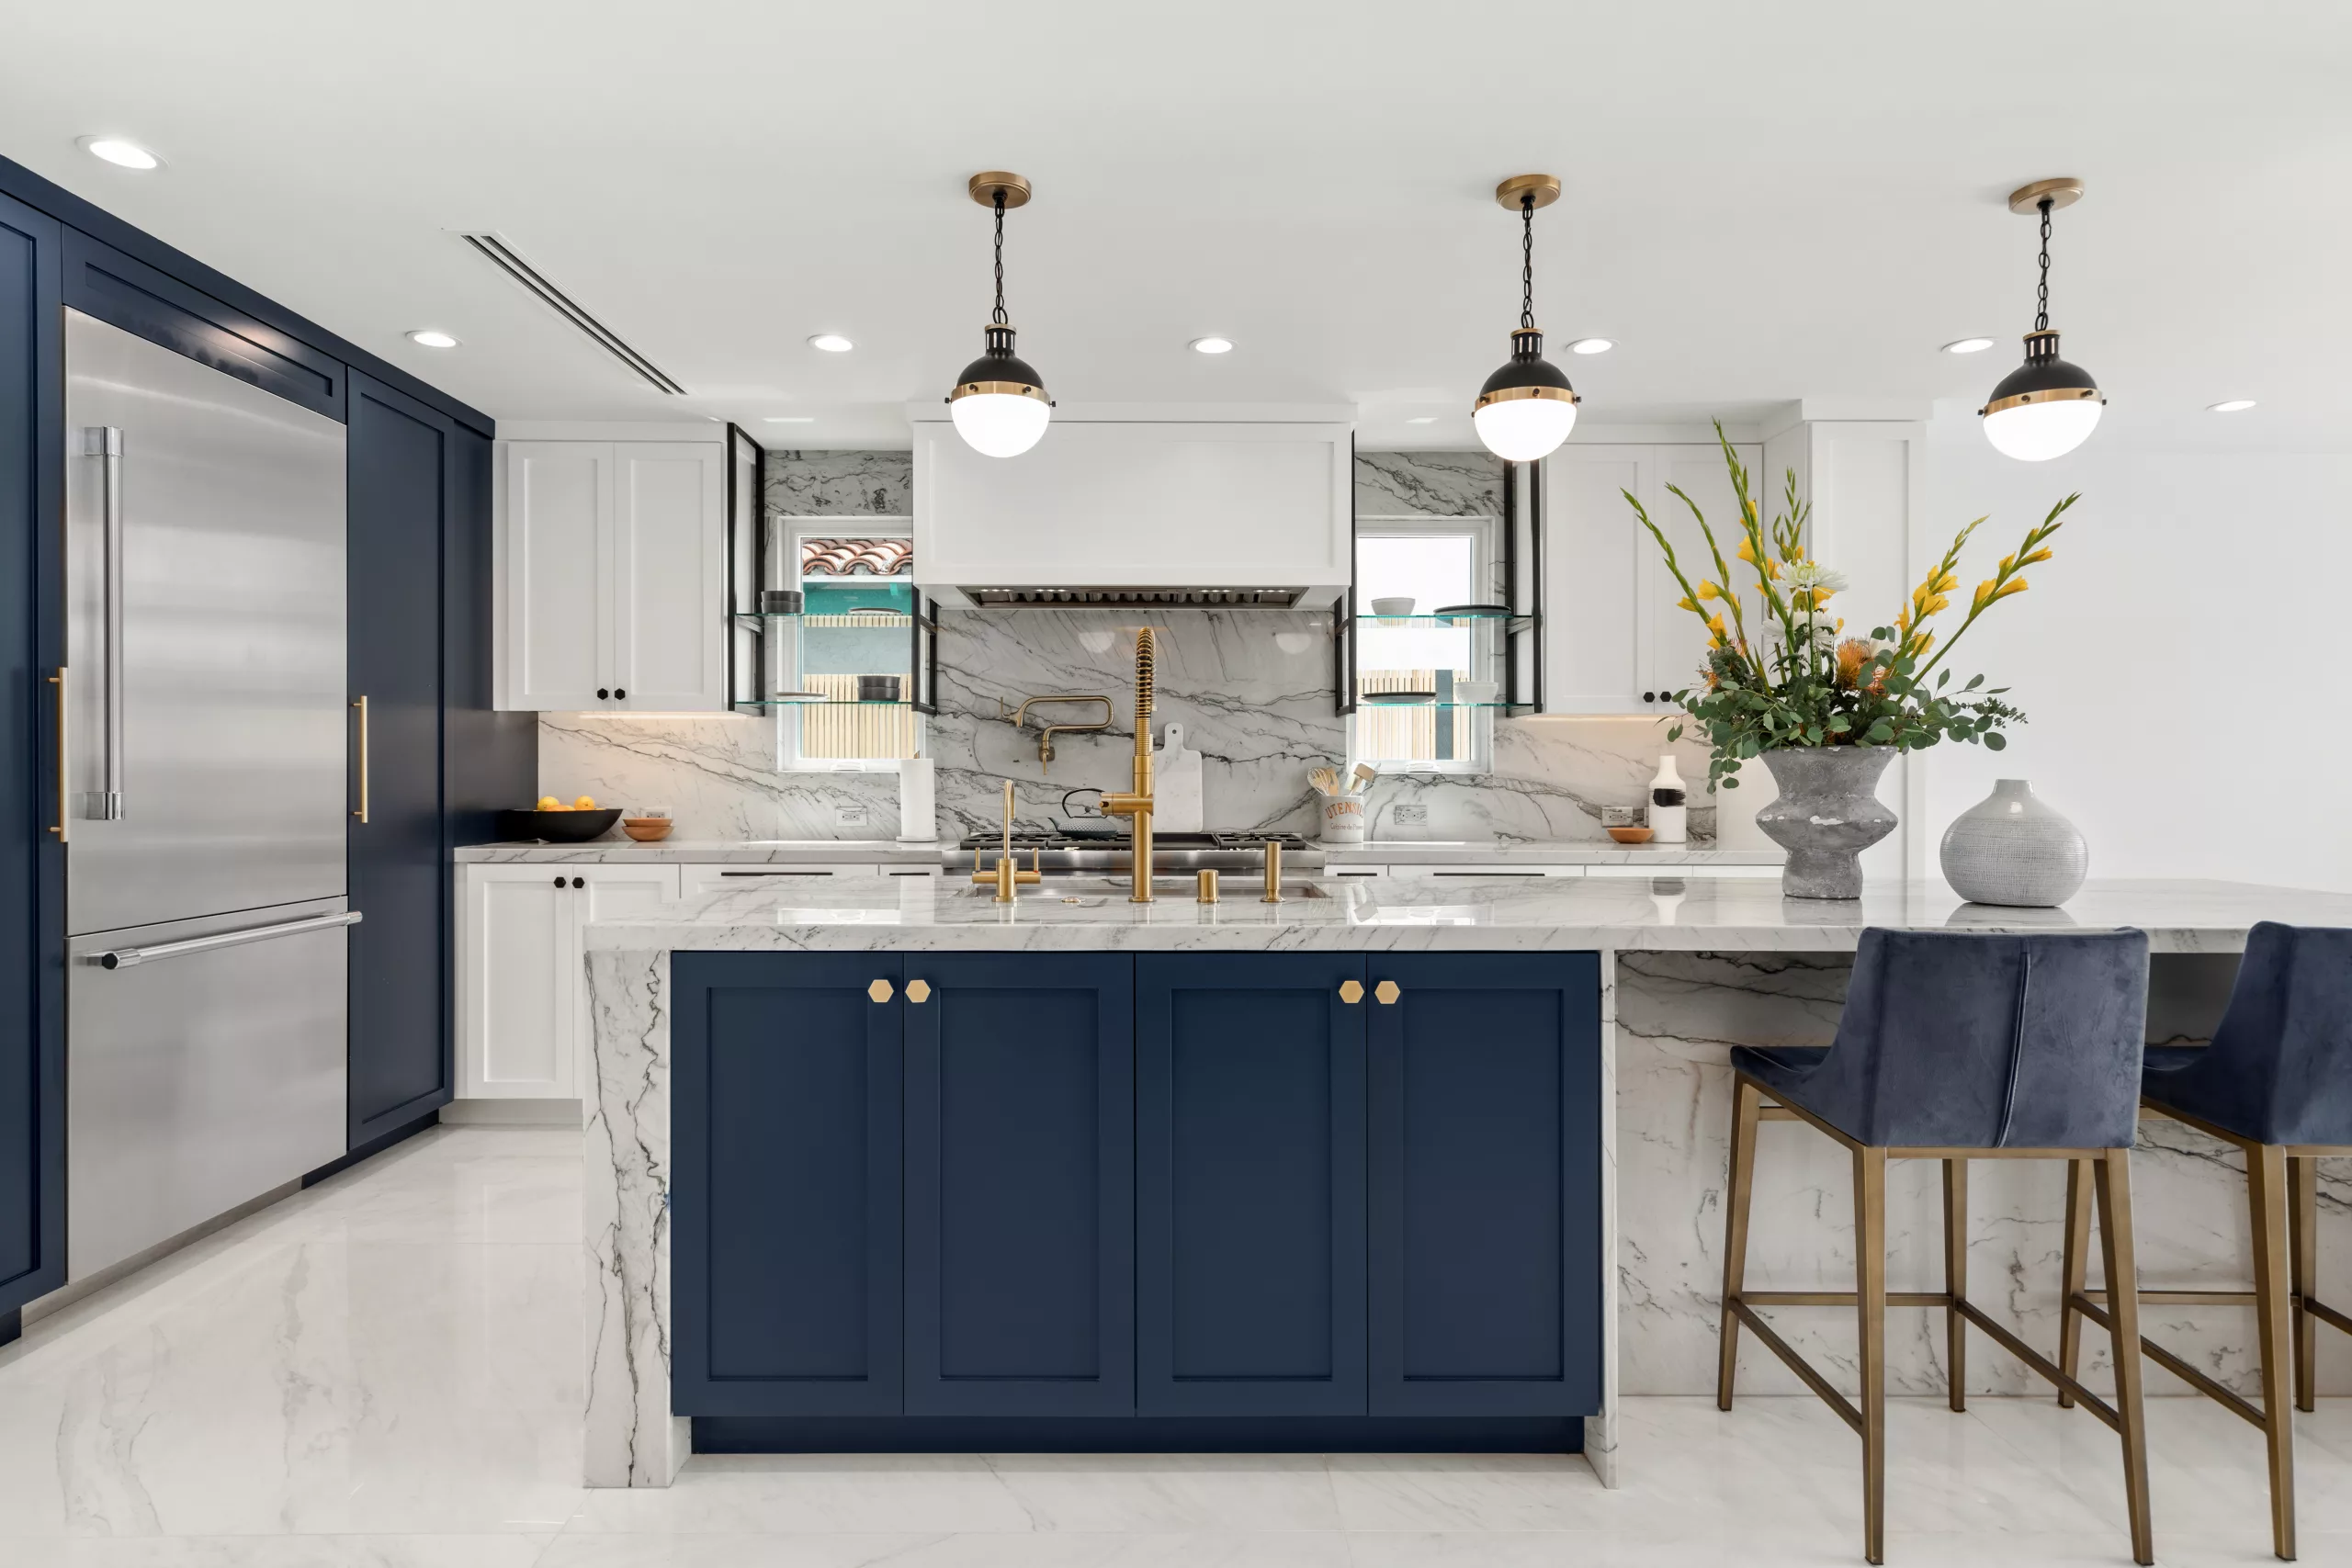 Agoura Hills, CA Home Renovation Kitchen Design